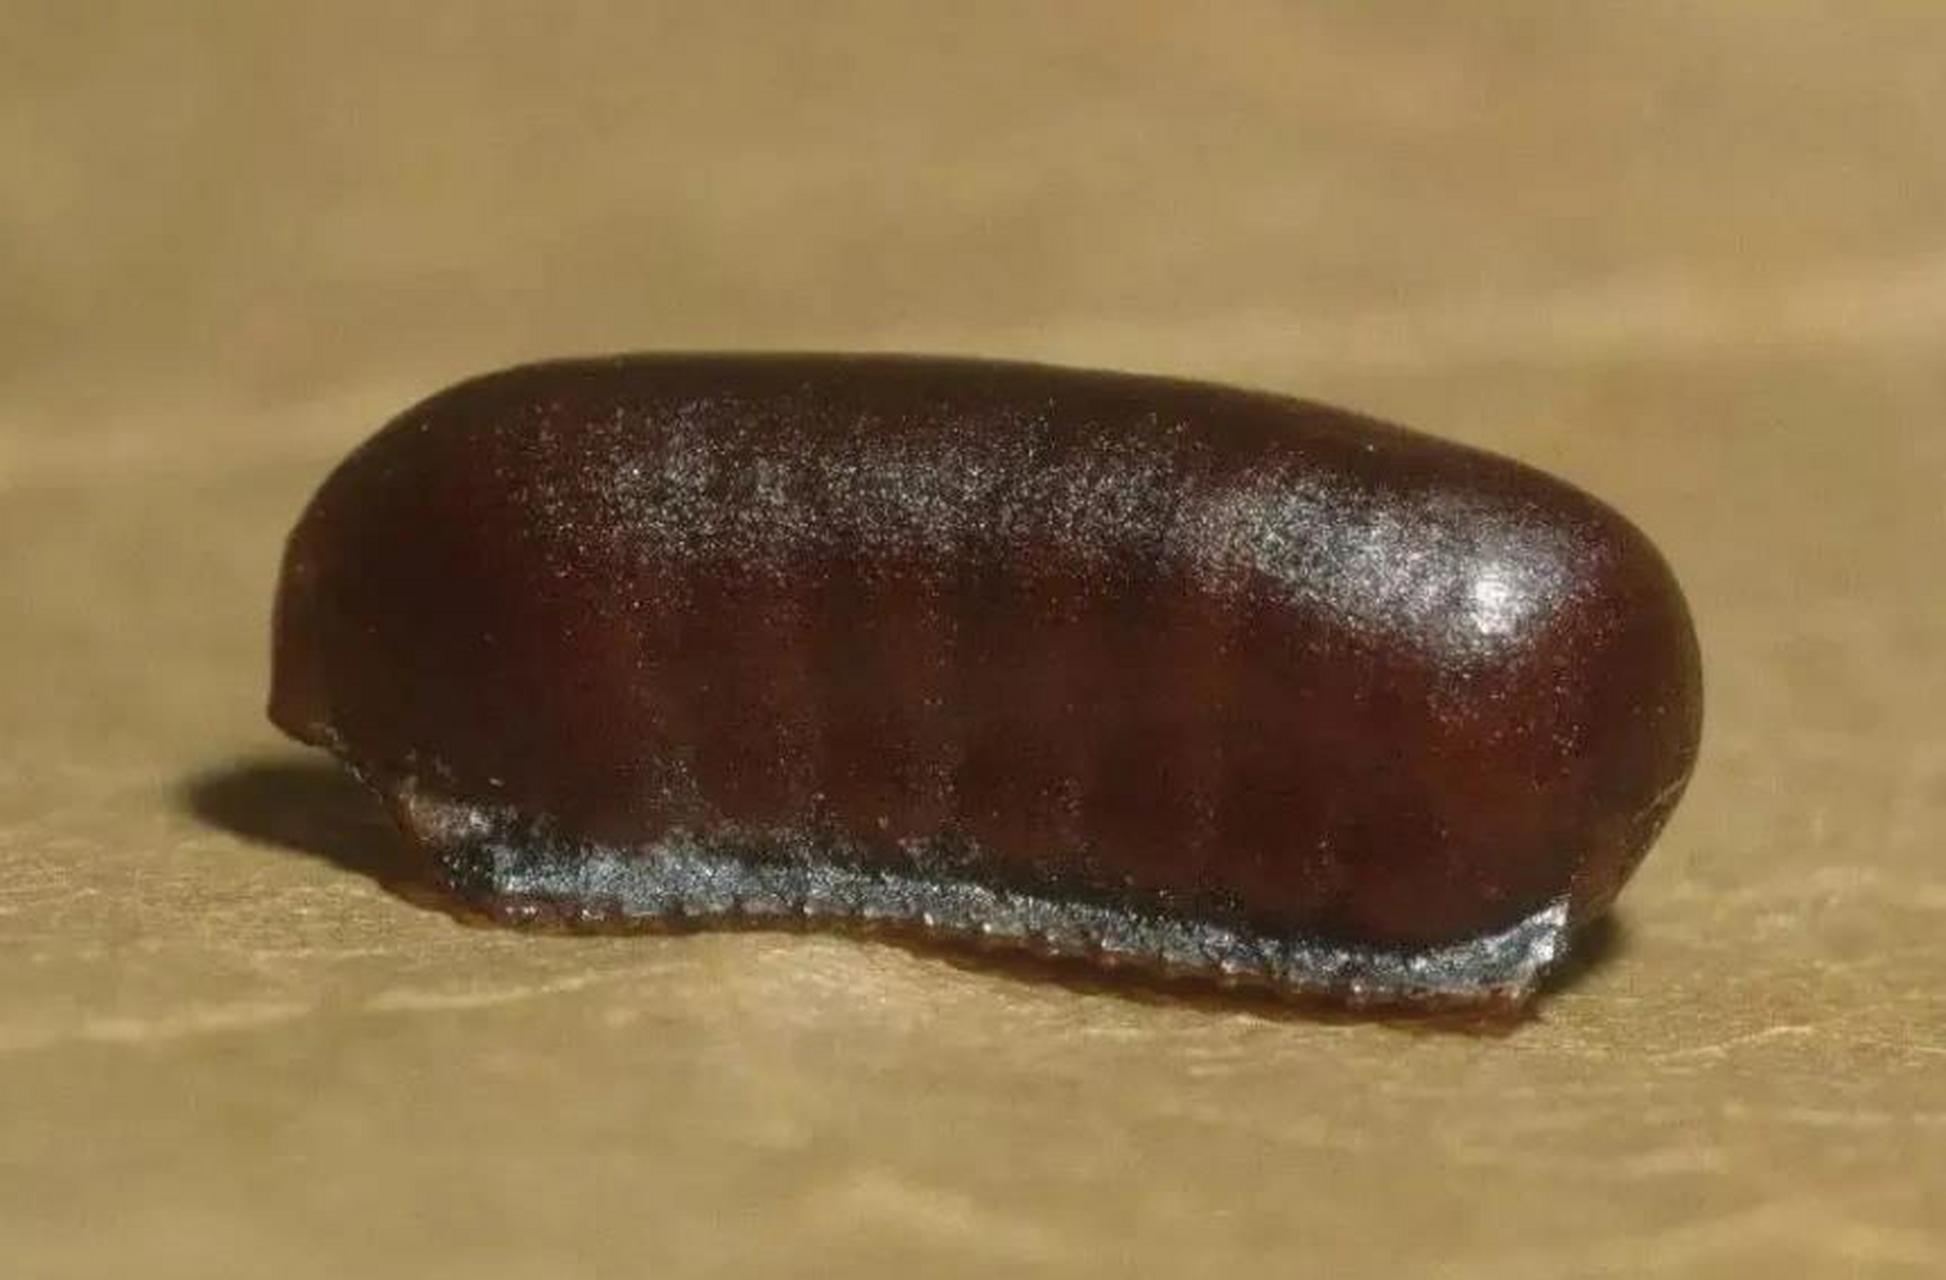 蟑螂的卵鞘是什么样图片